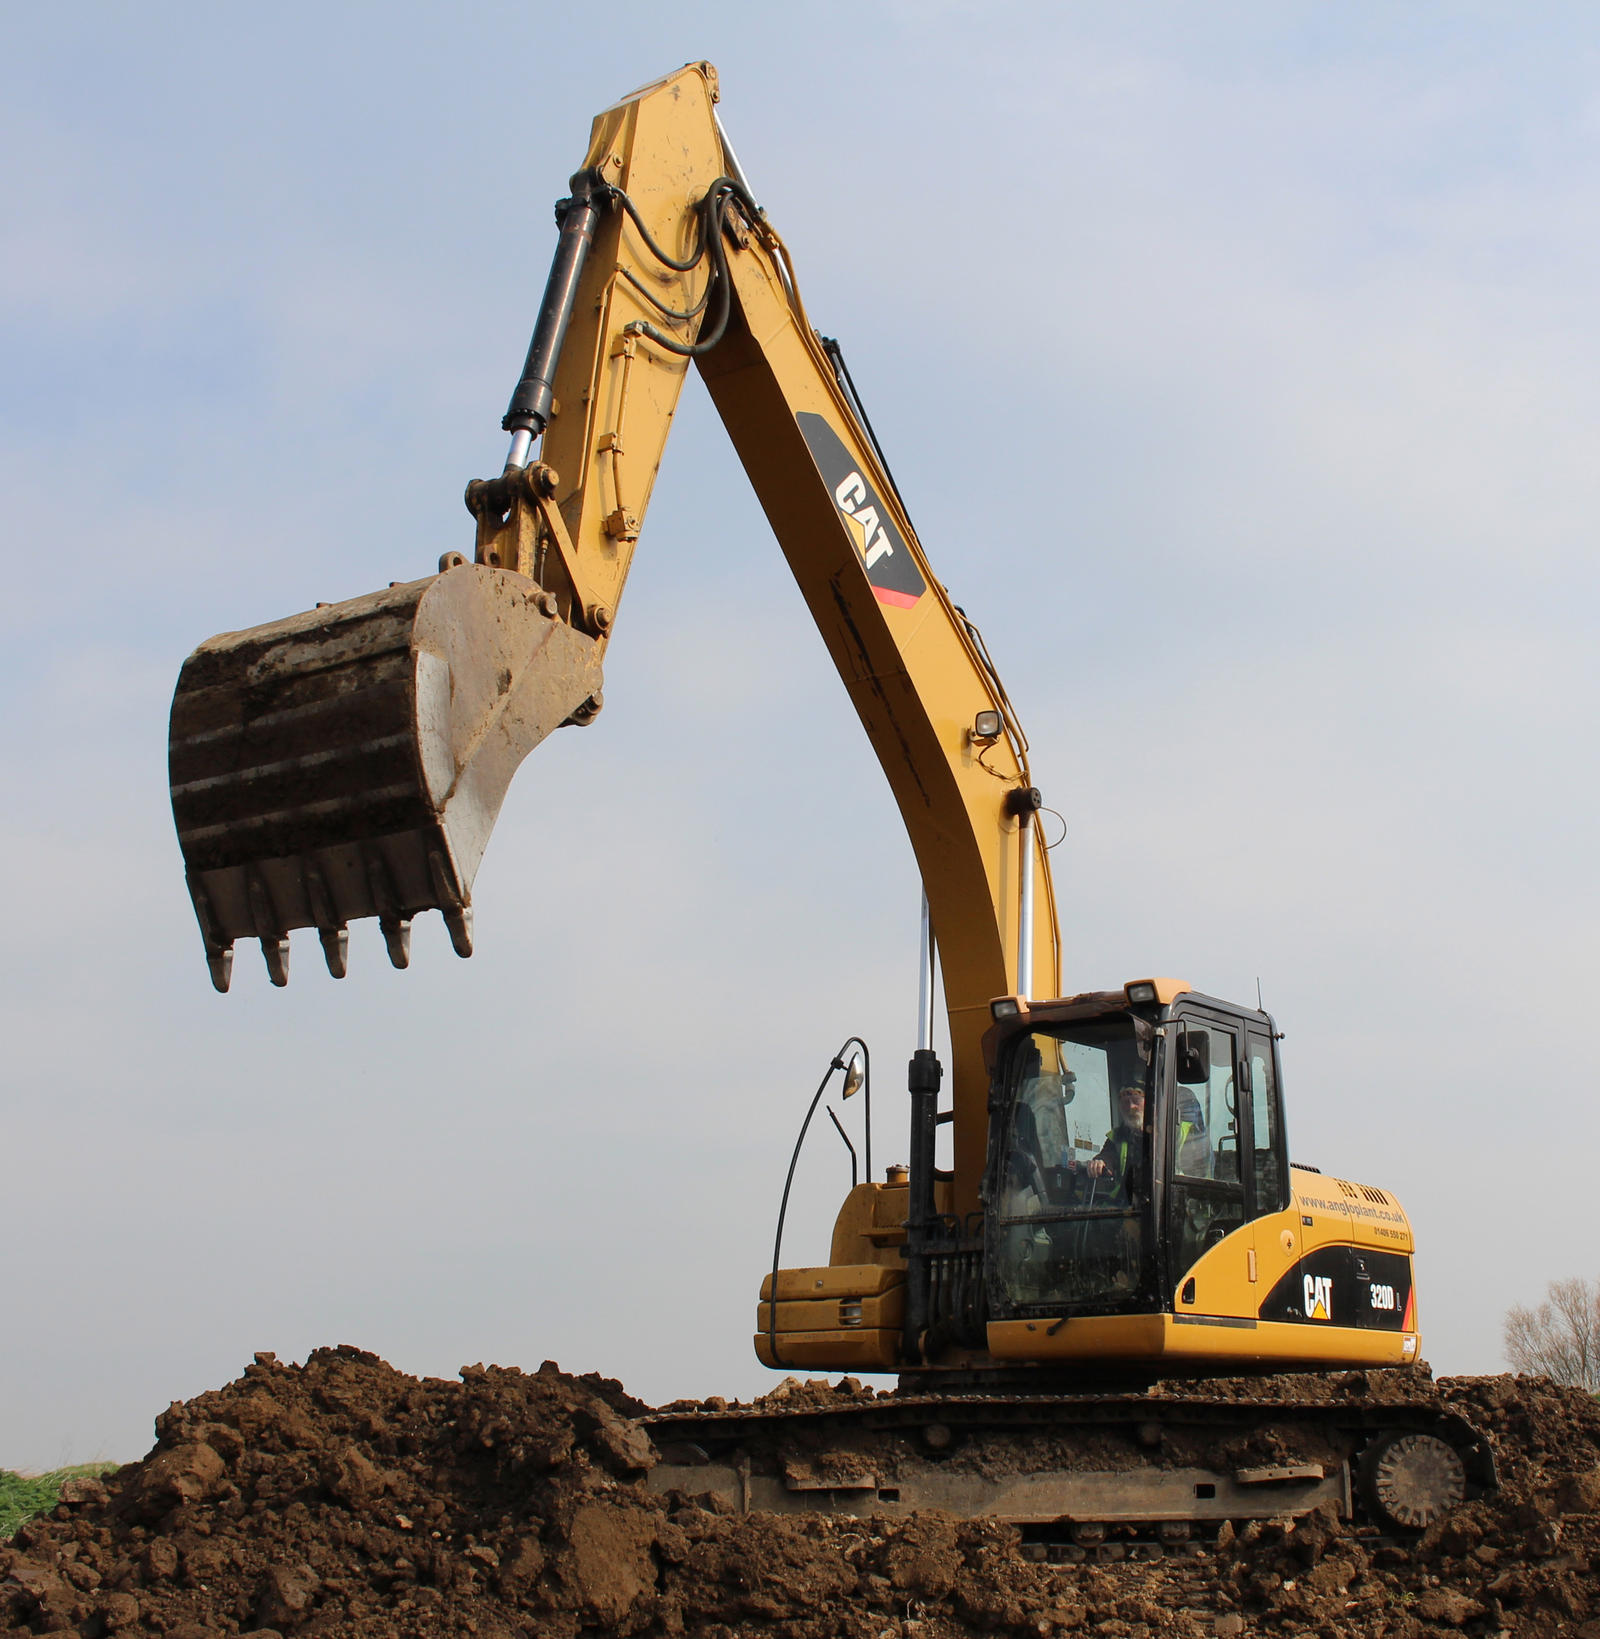 Excavating in Tight Spaces: Mini Excavators to the Rescue